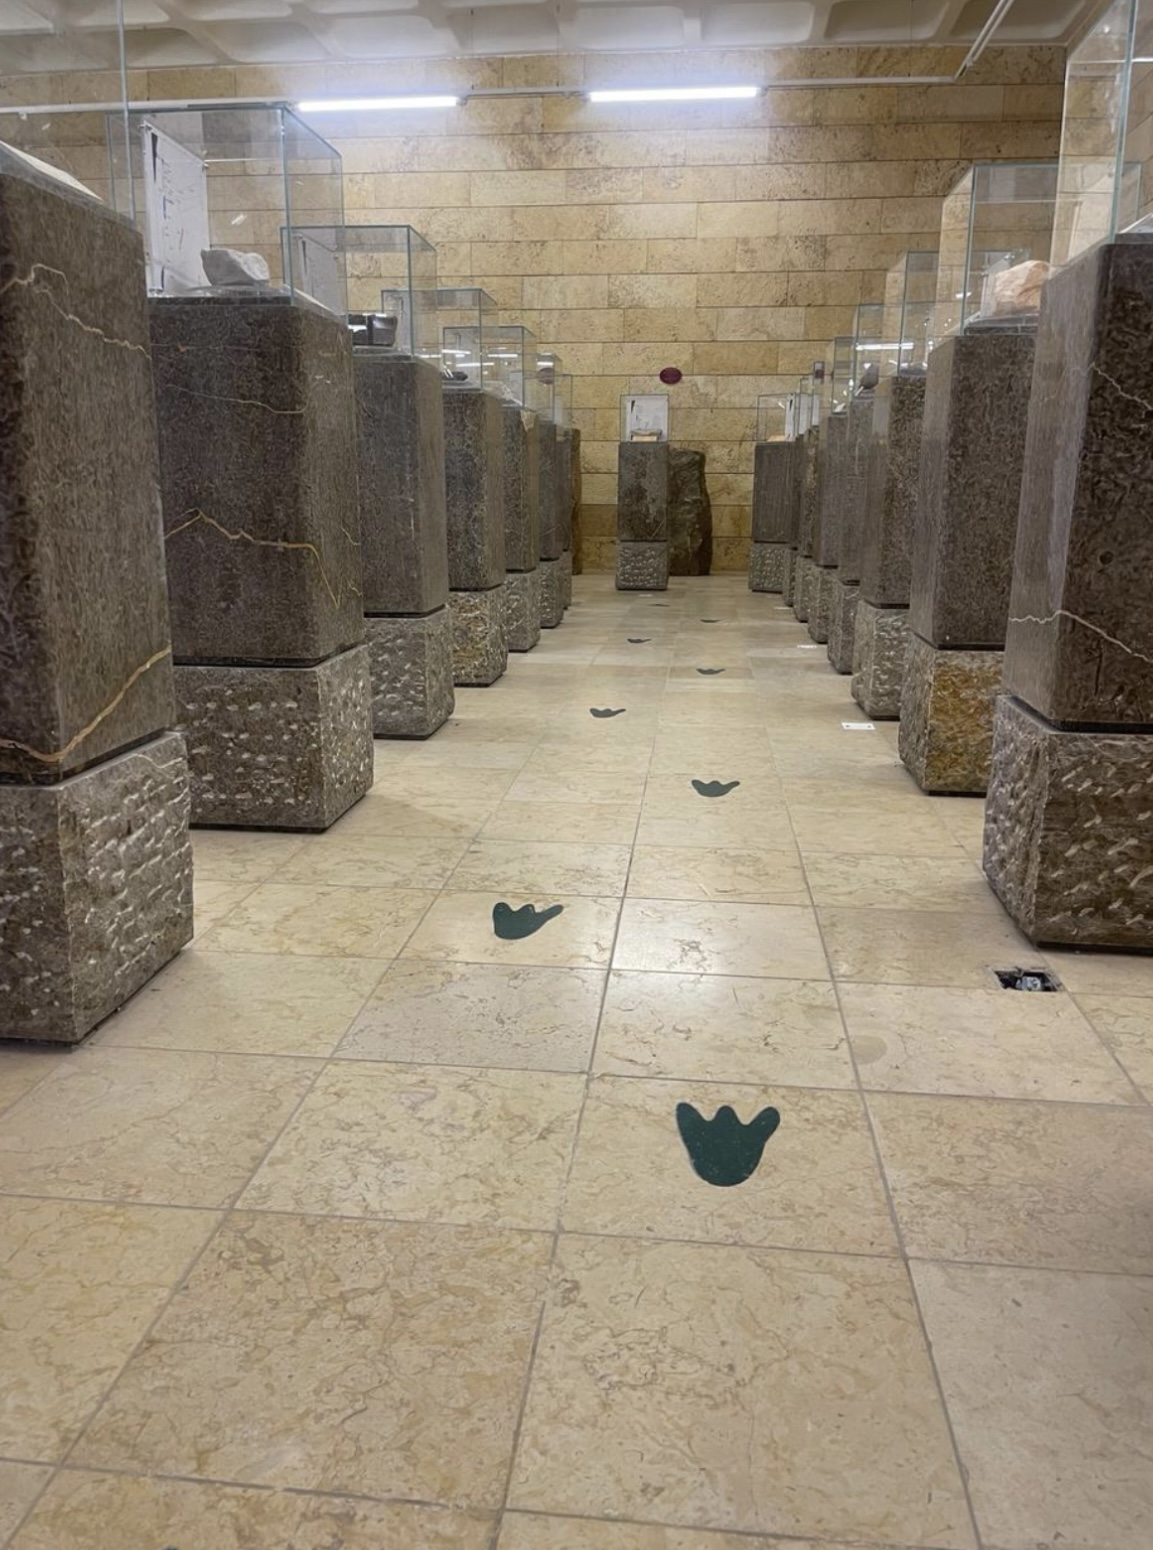 متحف بانوراما البحر الميت .. النادر والوحيد في العالم على الأرض الأردنية